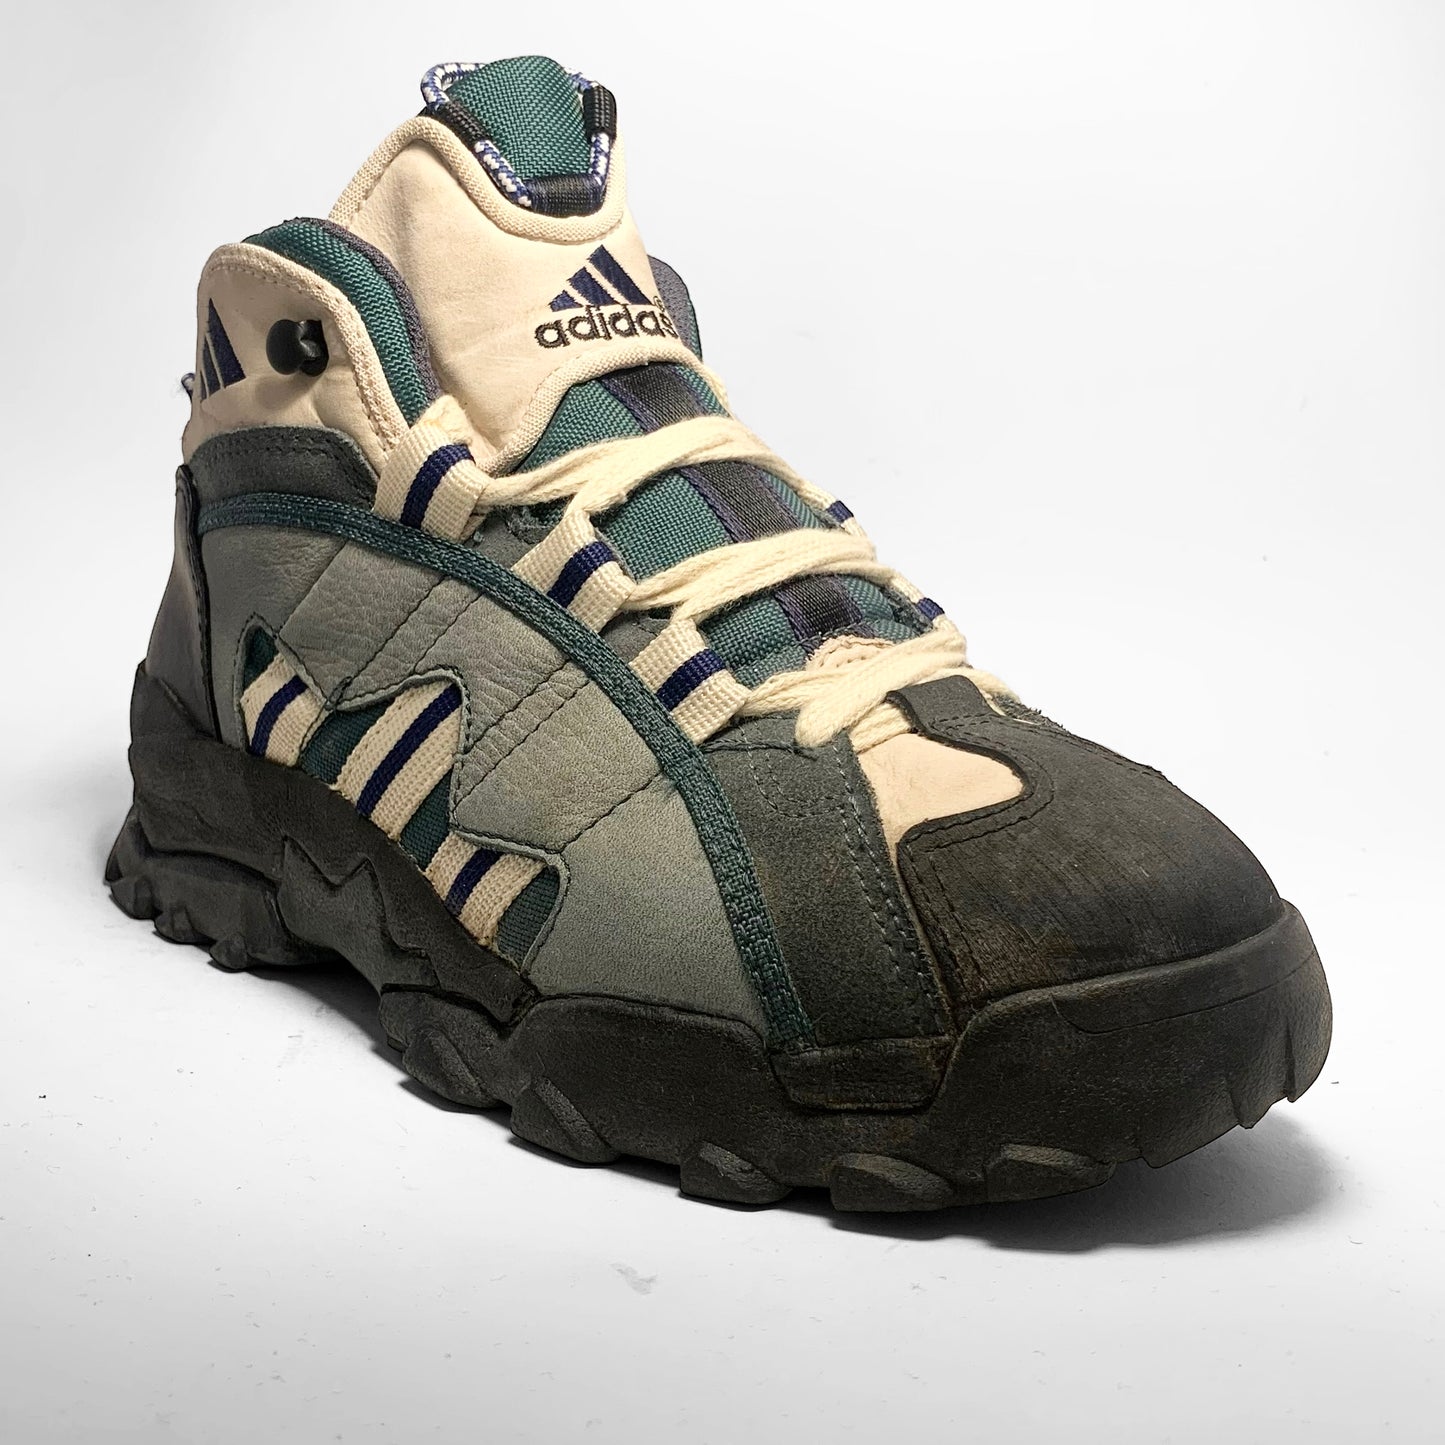 Adidas Adventure Boots (1996